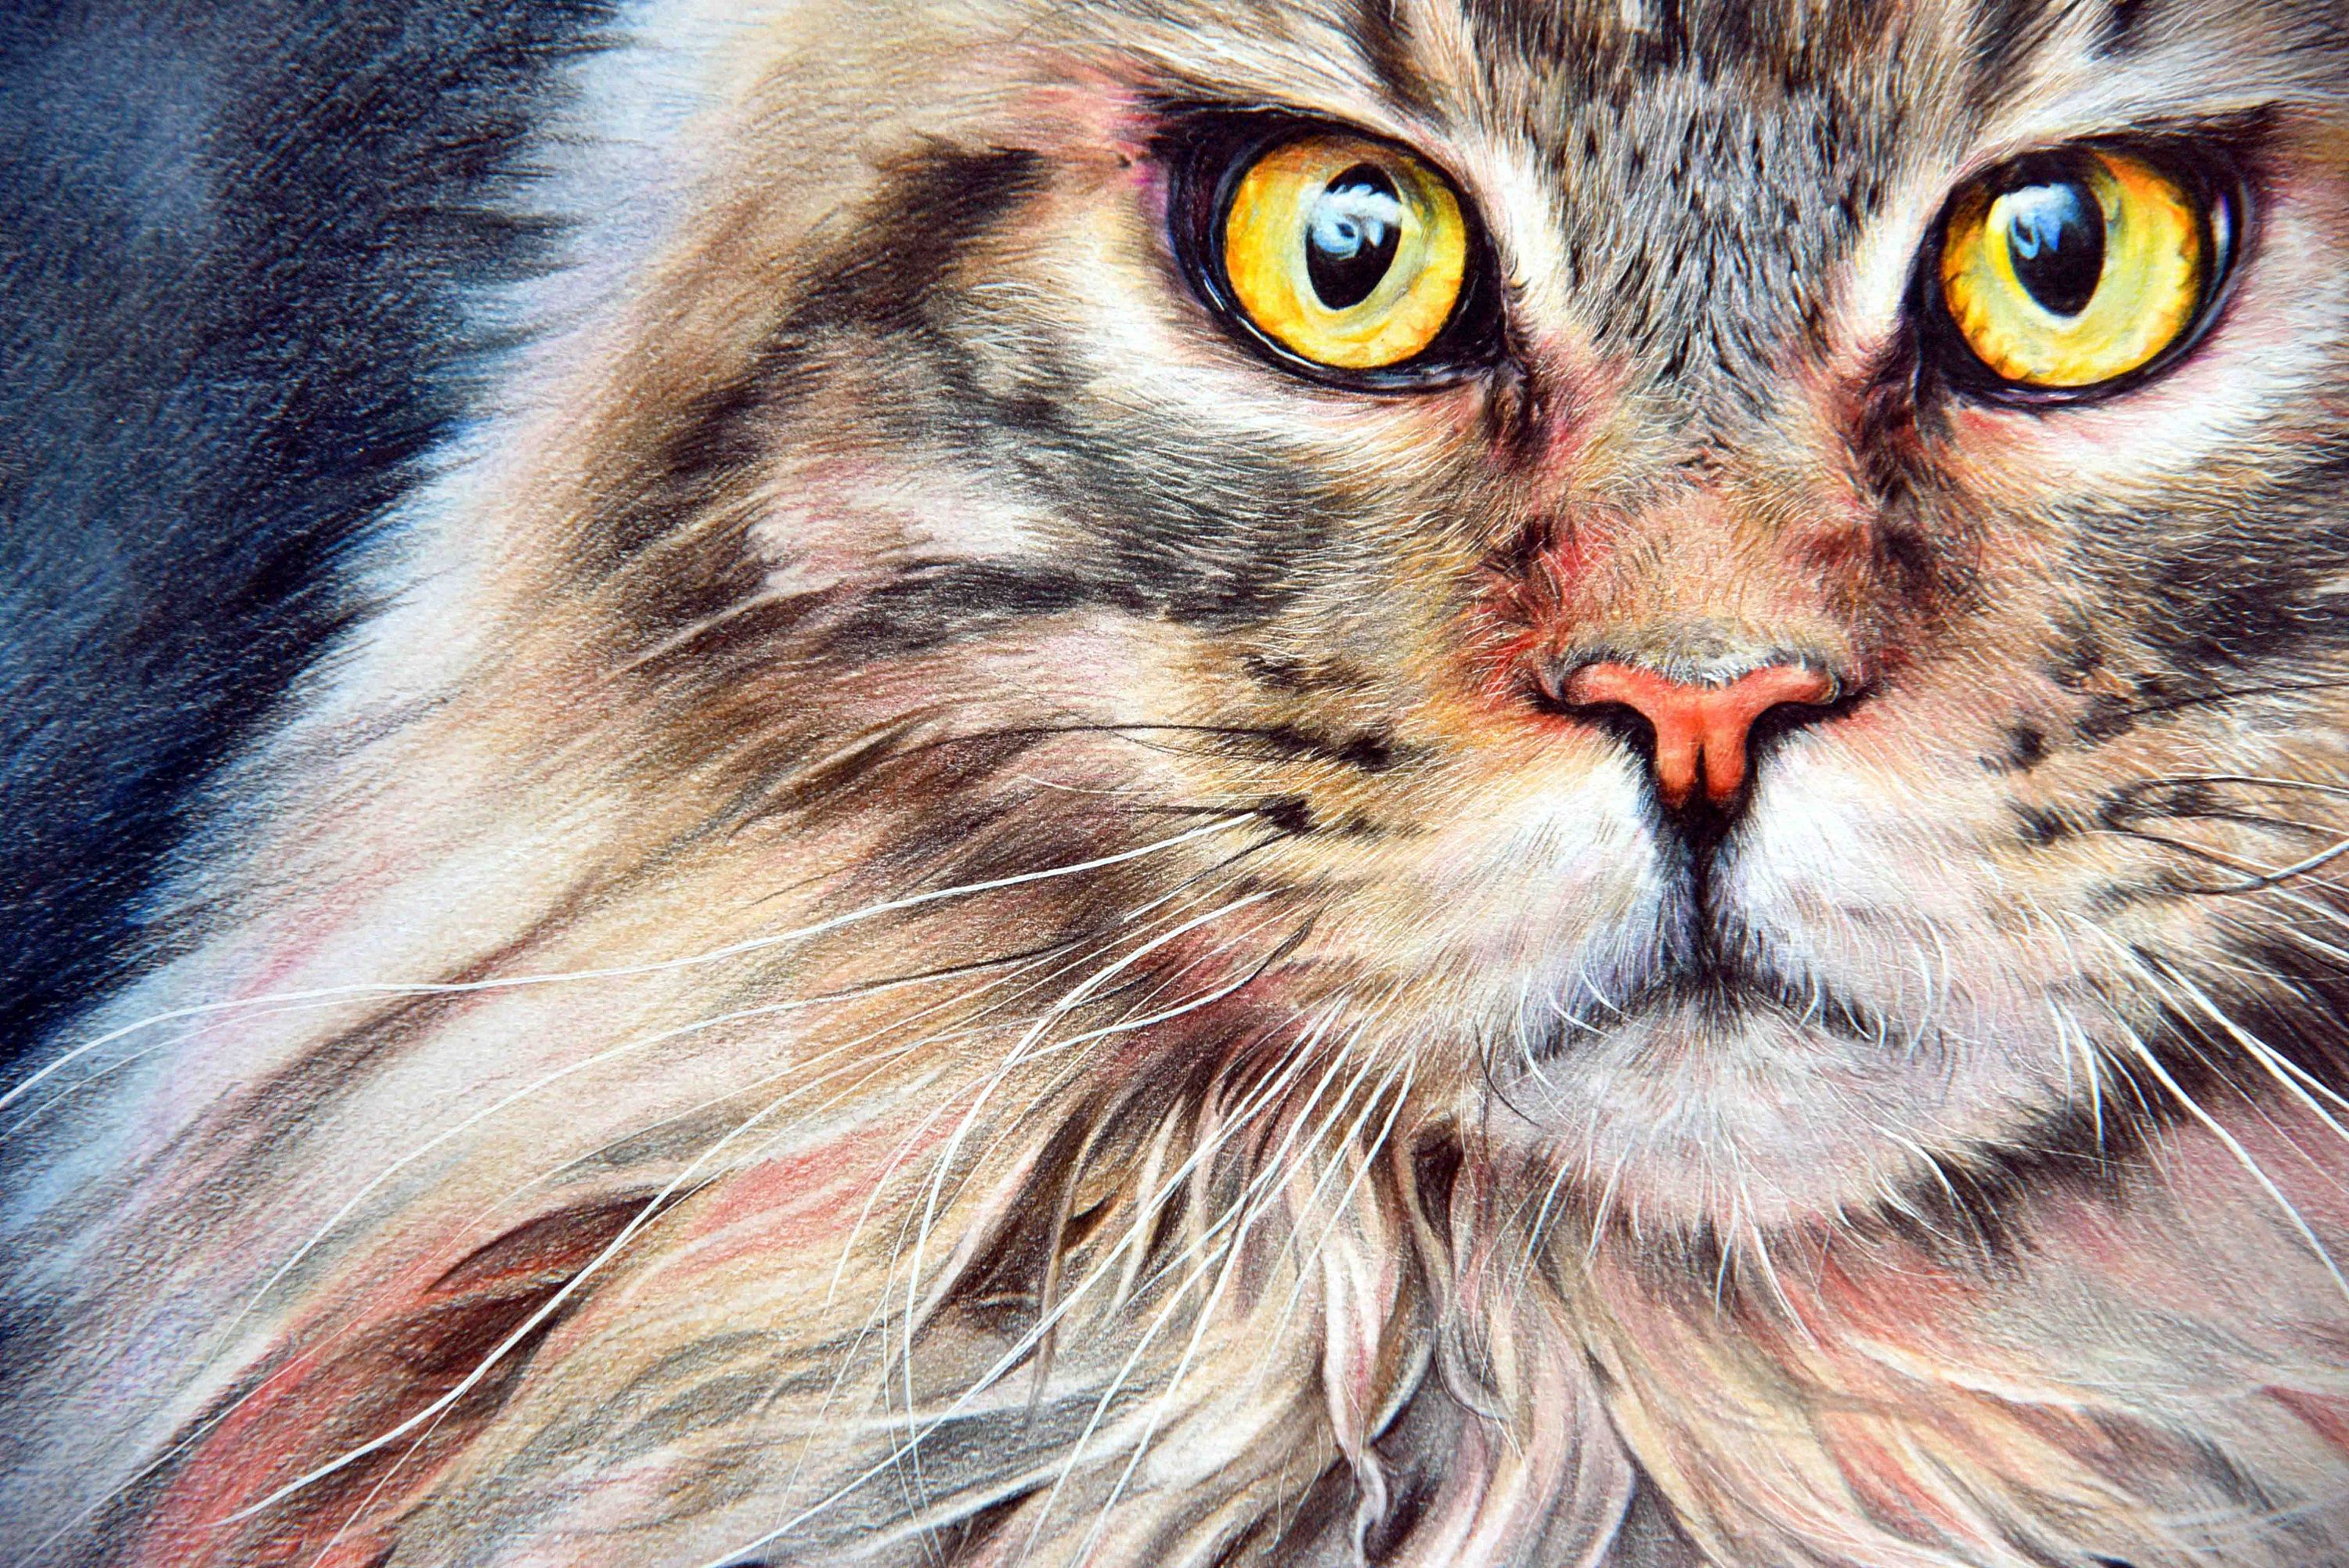 彩铅猫咪绘制-就喜欢这么霸气的喵!|纯艺术|彩铅